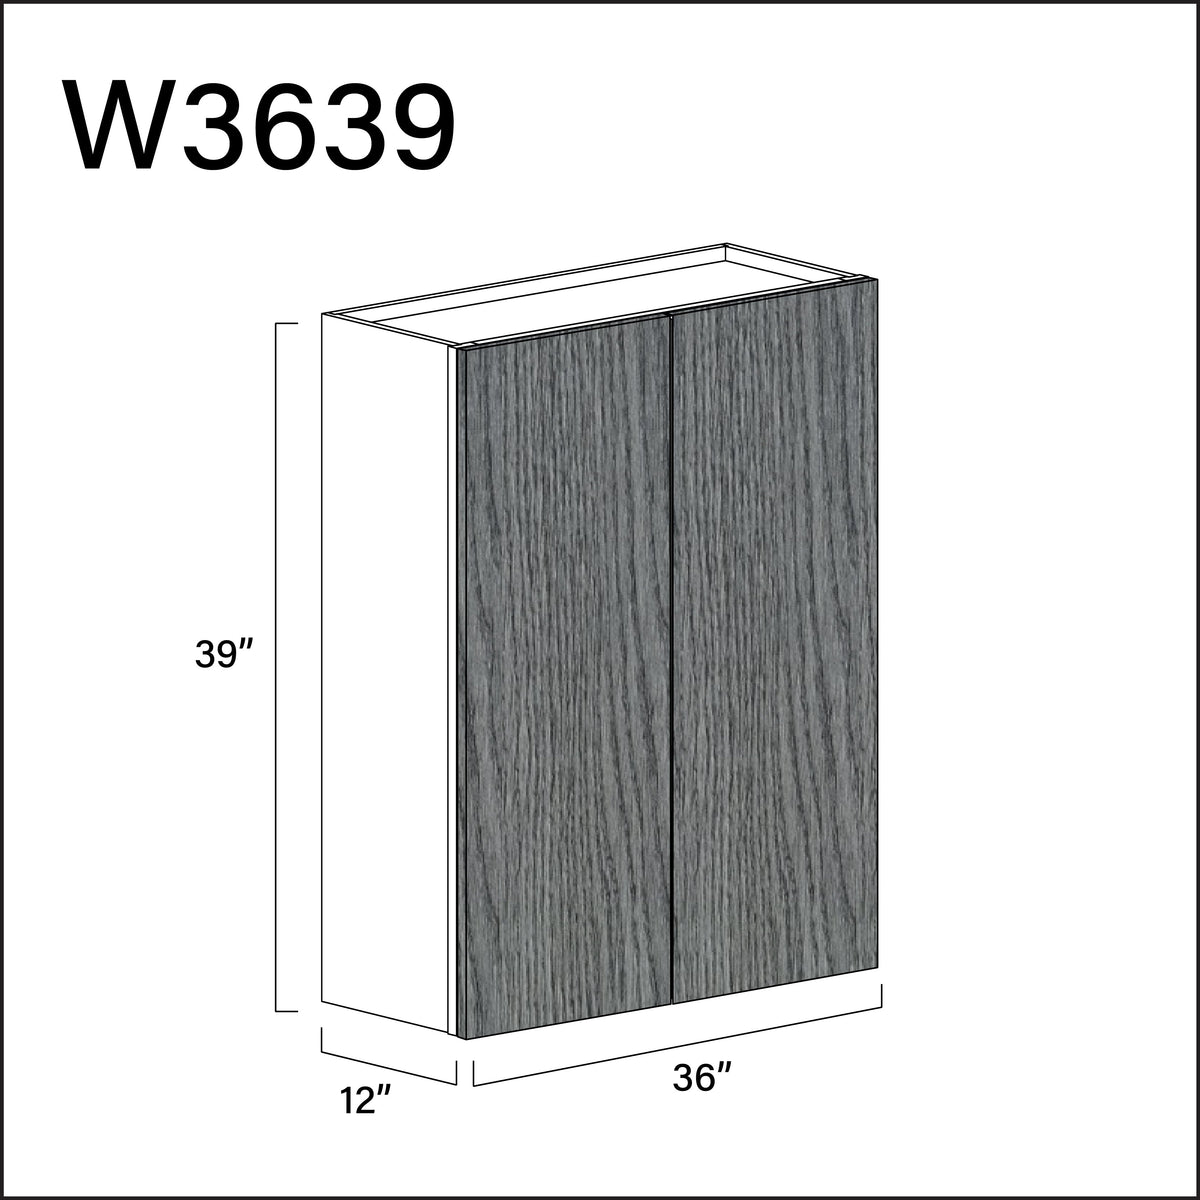 Textured Gray Frameless Double Door Wall Cabinet - 36" W x 39" H x 12" D